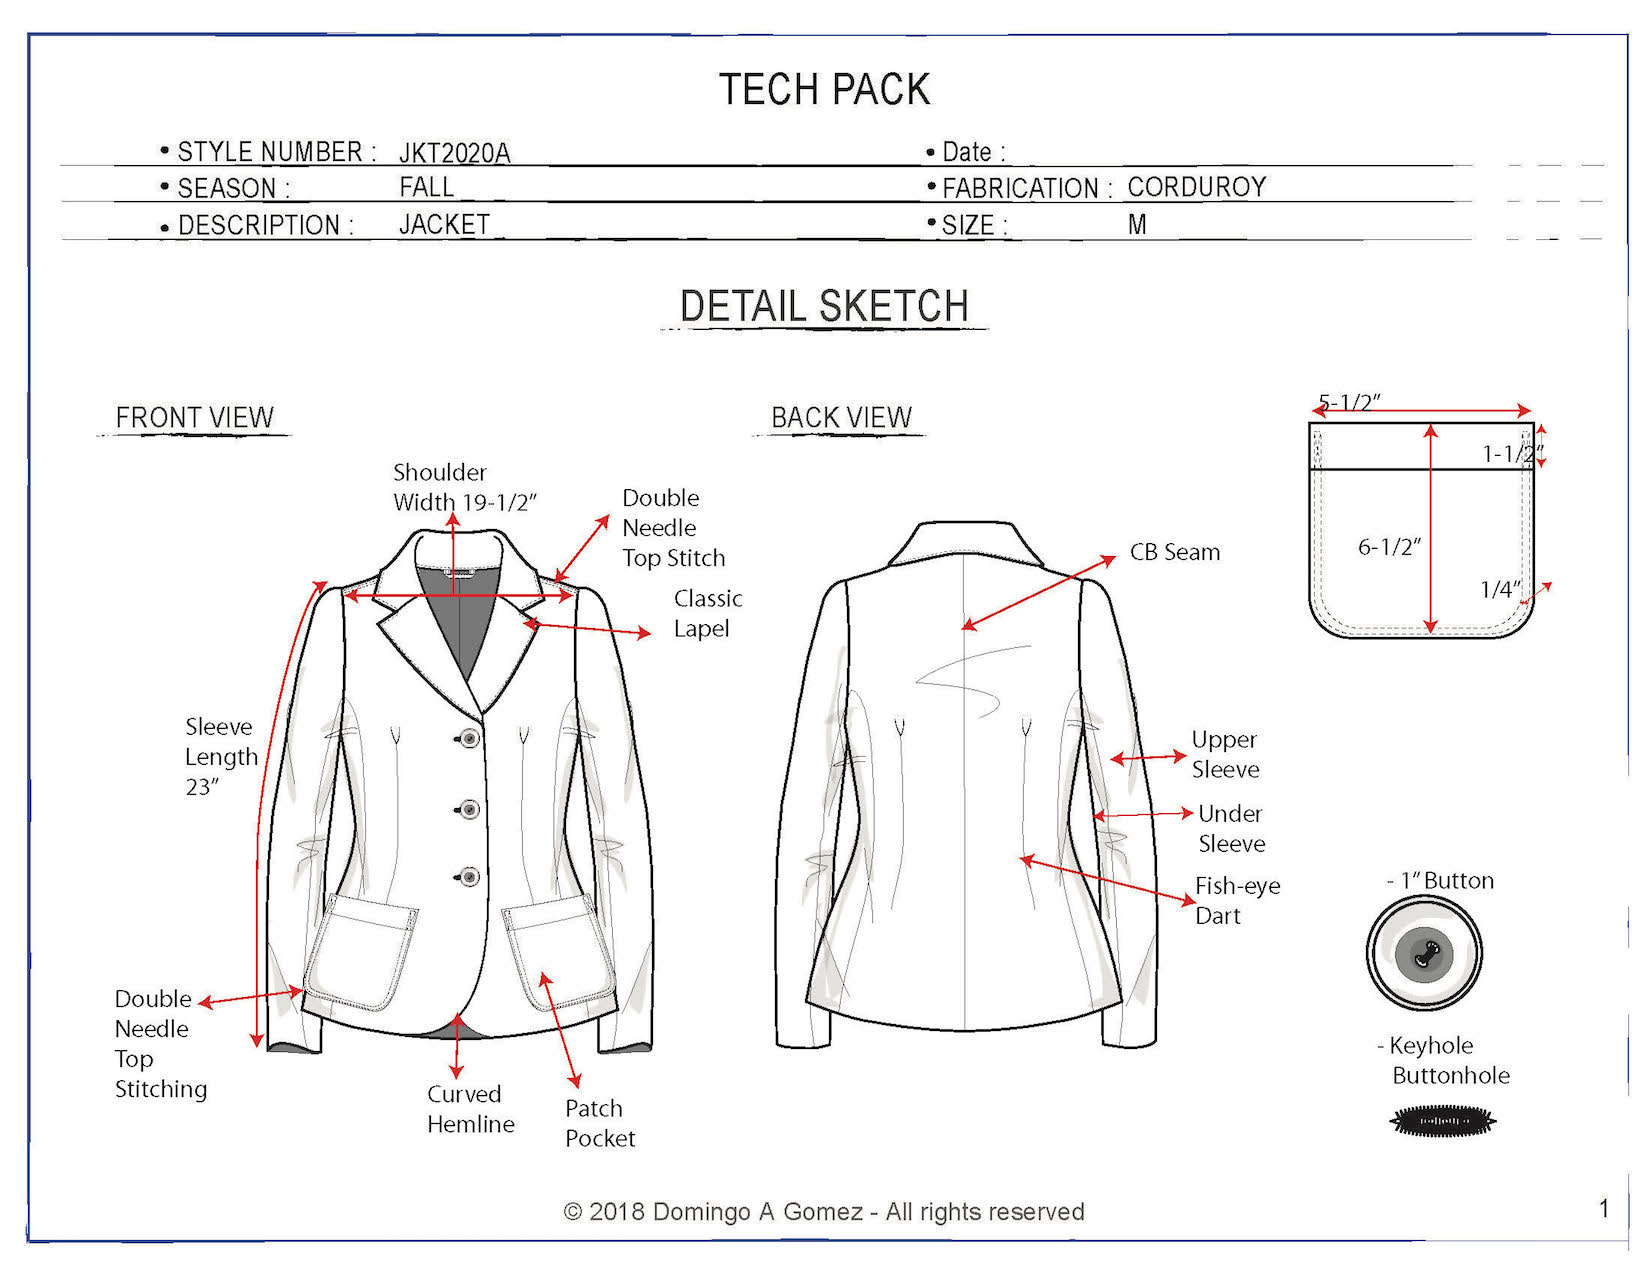 Jacket garment Domingo Gomez Tech Pack 2020 Page 2